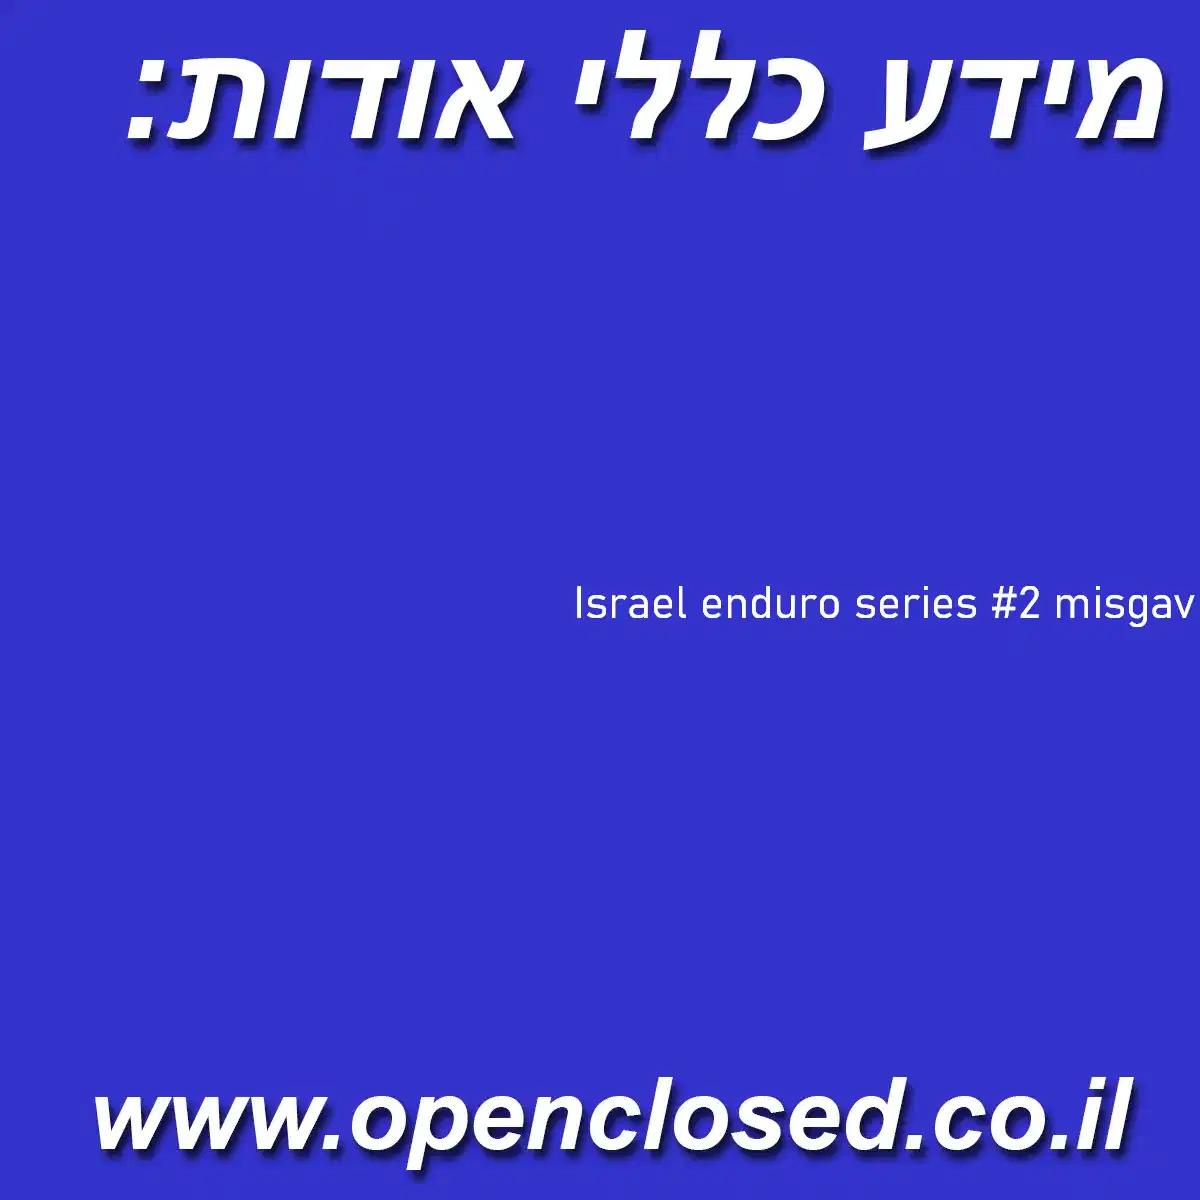 Israel enduro series #2 misgav